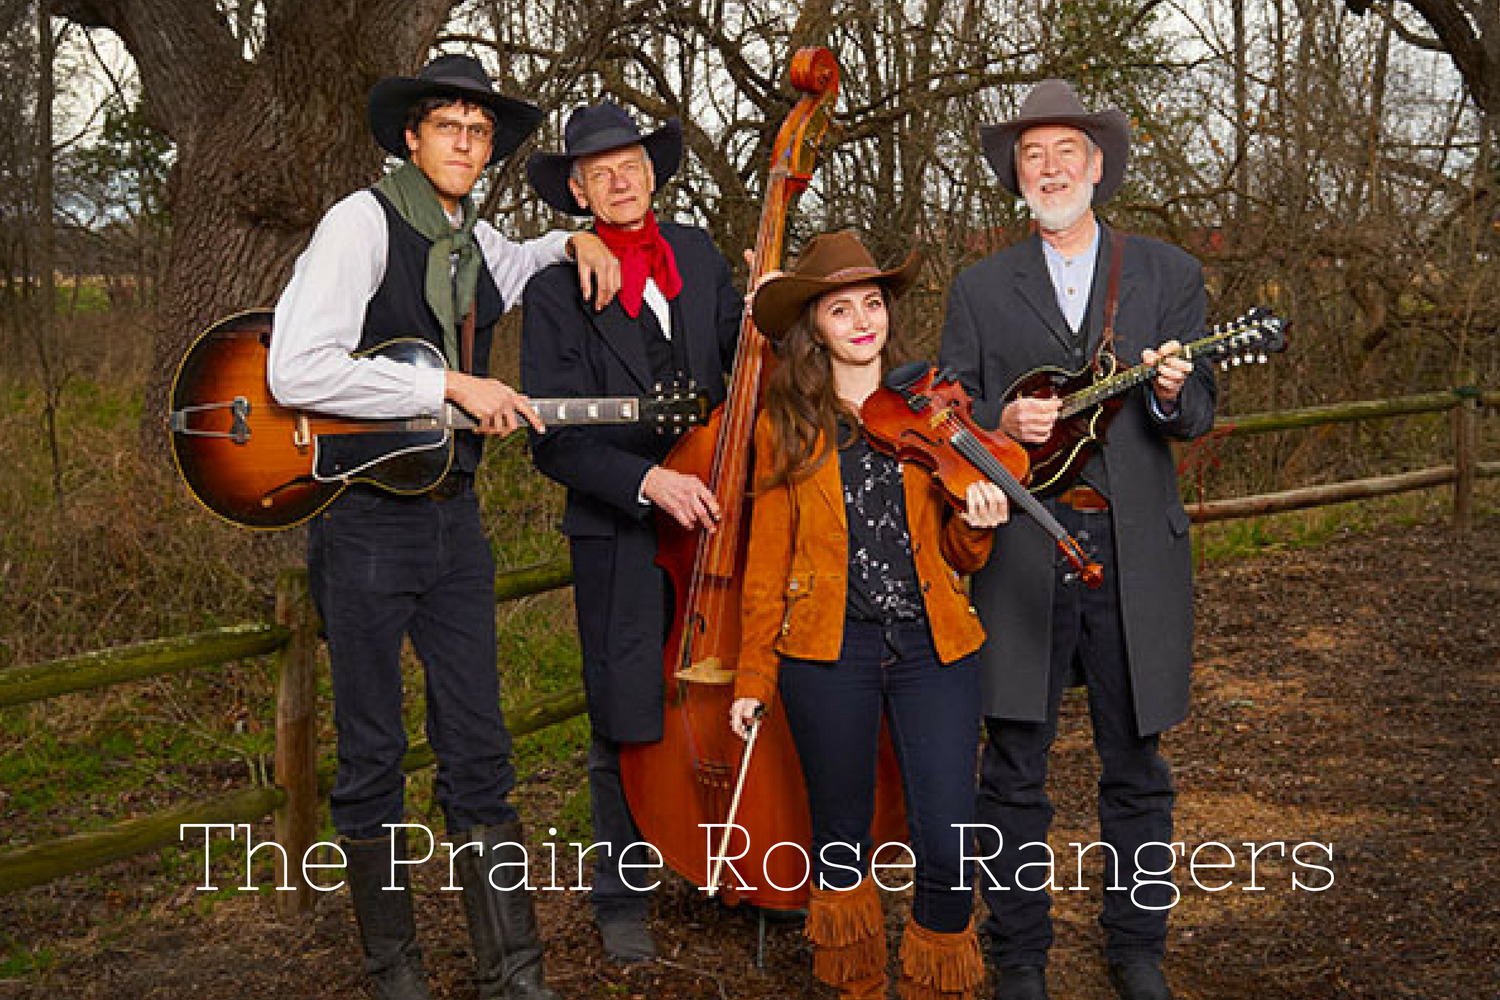 The Prairie Rose Rangers